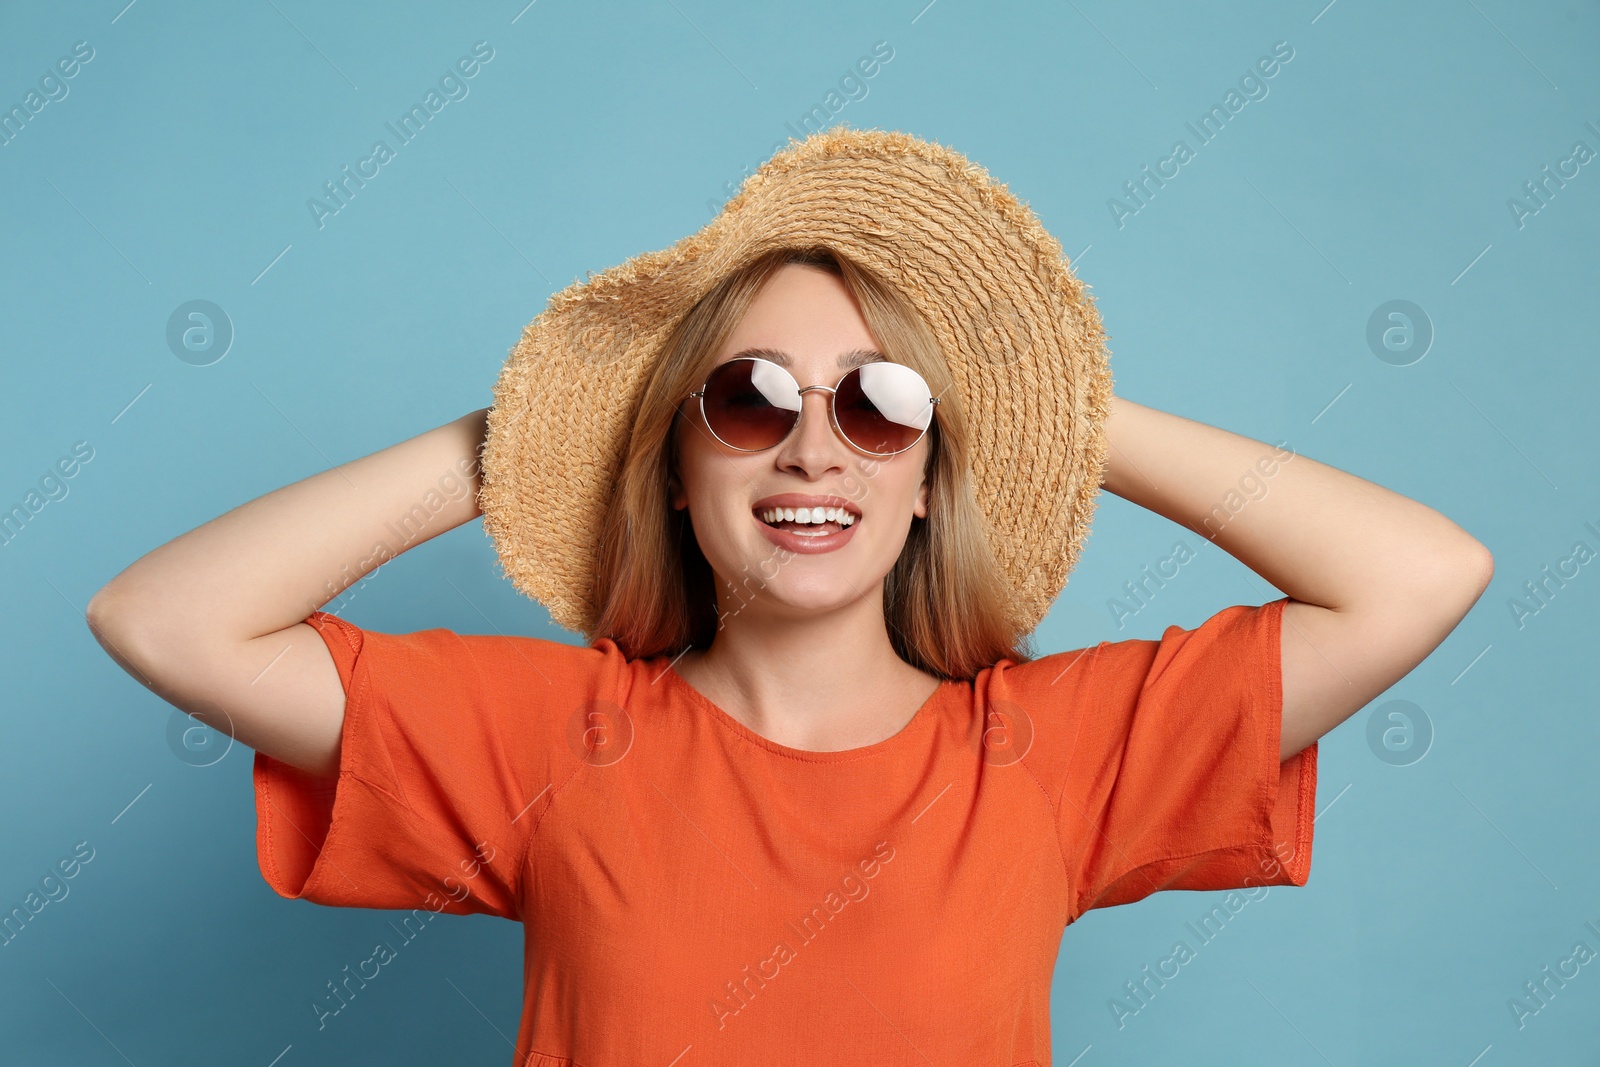 Photo of Beautiful young woman wearing straw hat and sunglasses on light blue background. Stylish headdress